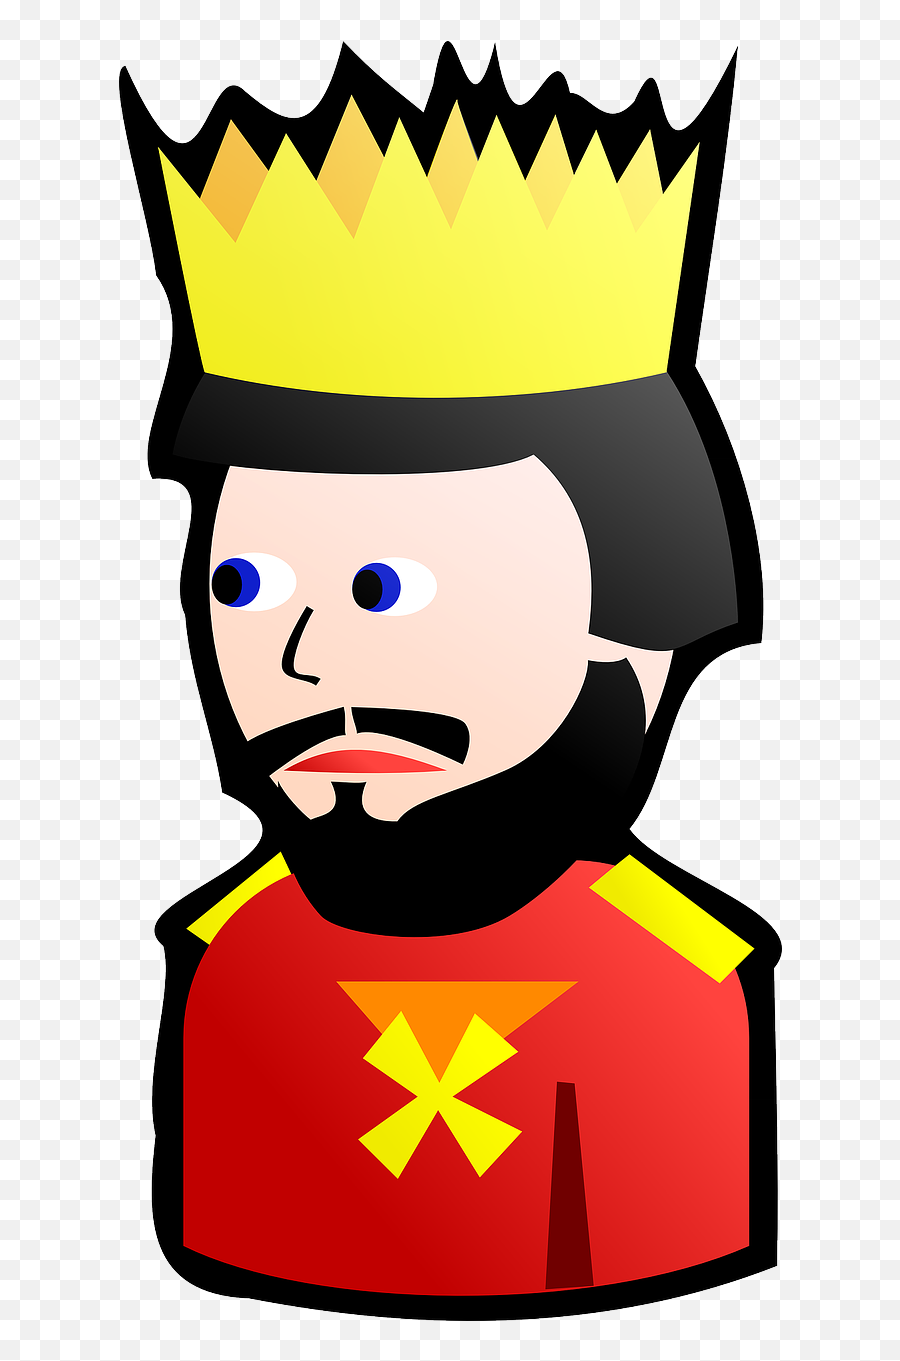 King Card Medieval Poker Gambling - King Clipart Emoji,King Hat Emoji